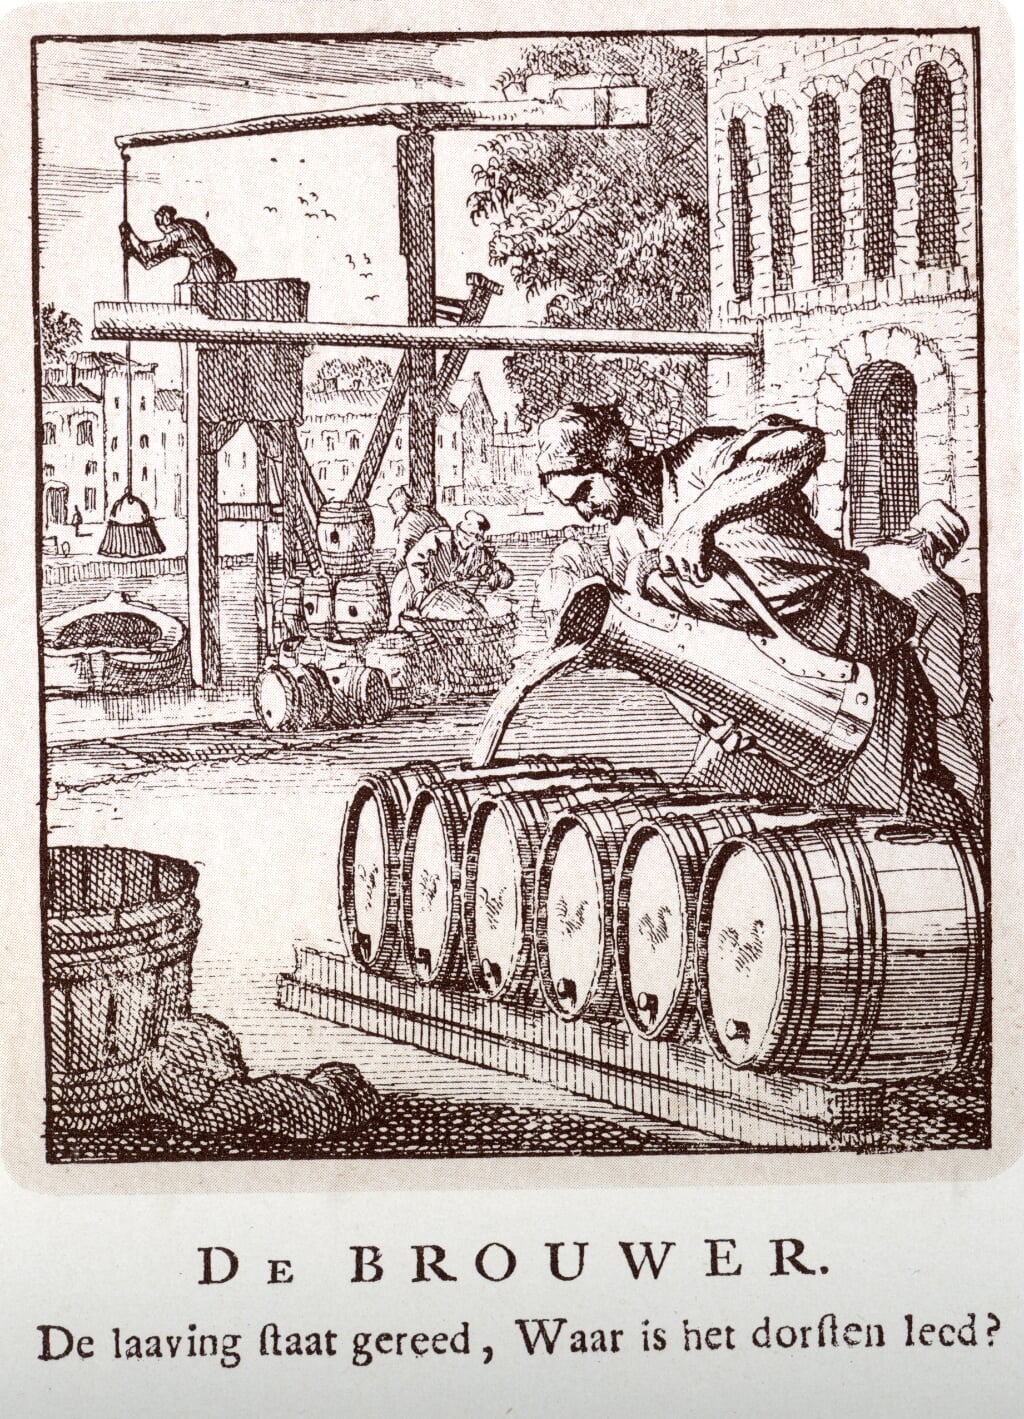 In de ‘Spiegel van het menselyk bedrijf’ uit 1694 beeldden Jan en Caspar Luiken honderd ambachten uit waaronder dat van bierbrouwer.